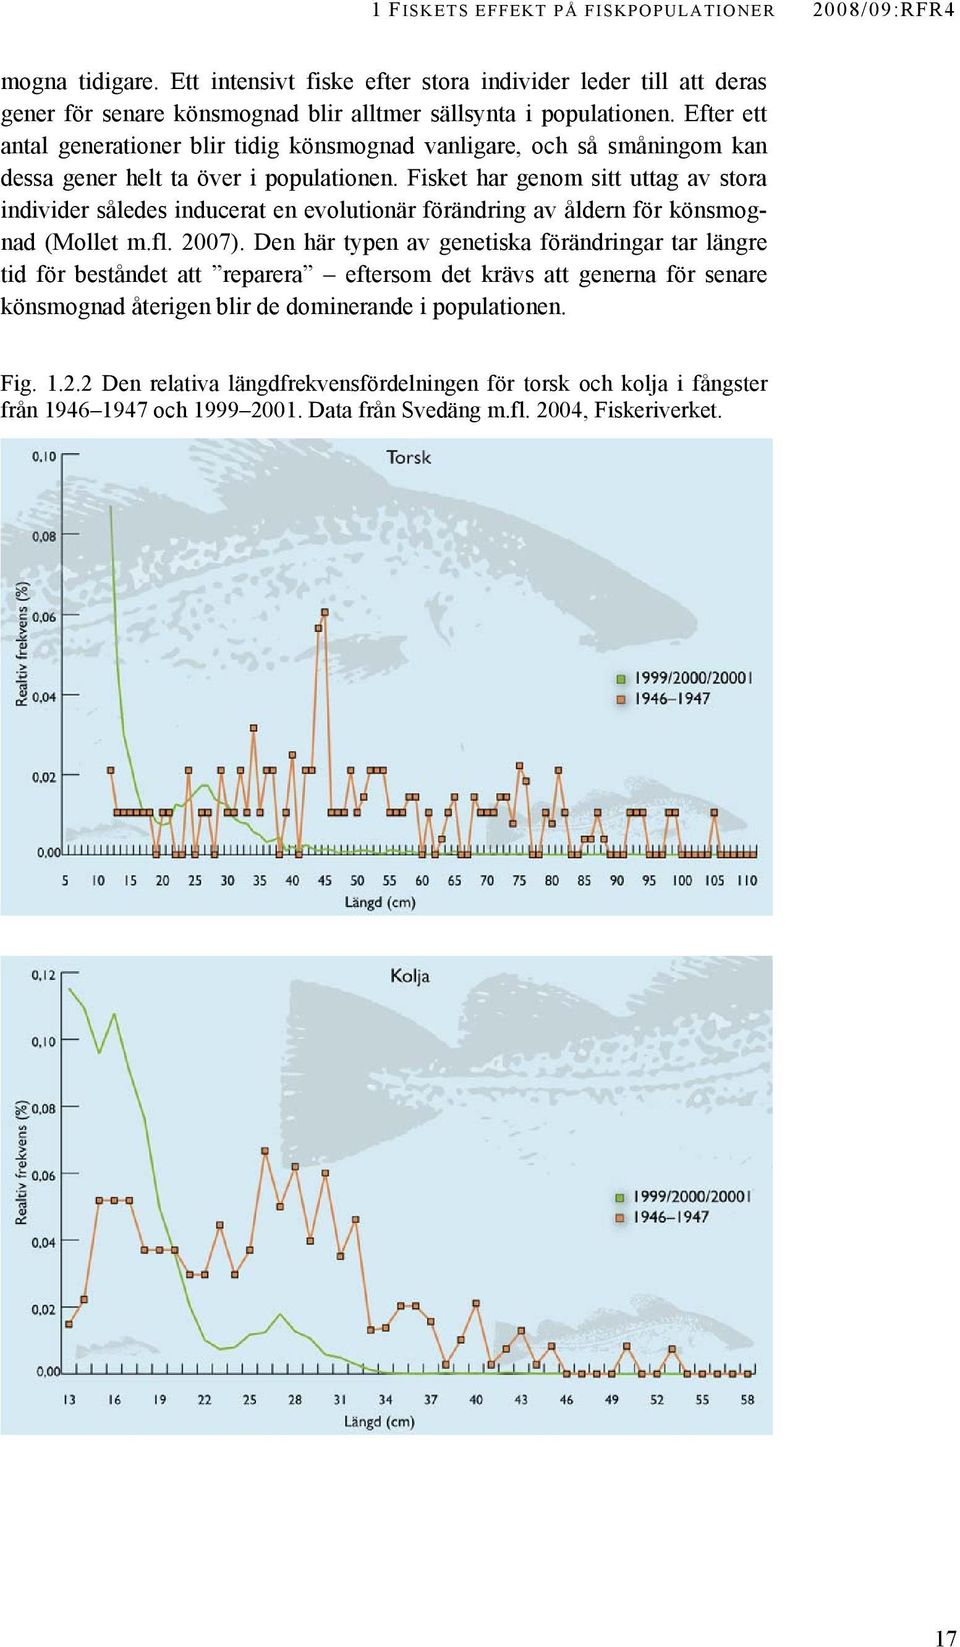 Fisket har genom sitt uttag av stora individer således inducerat en evolutionär förändring av åldern för könsmognad (Mollet m.fl. 2007).